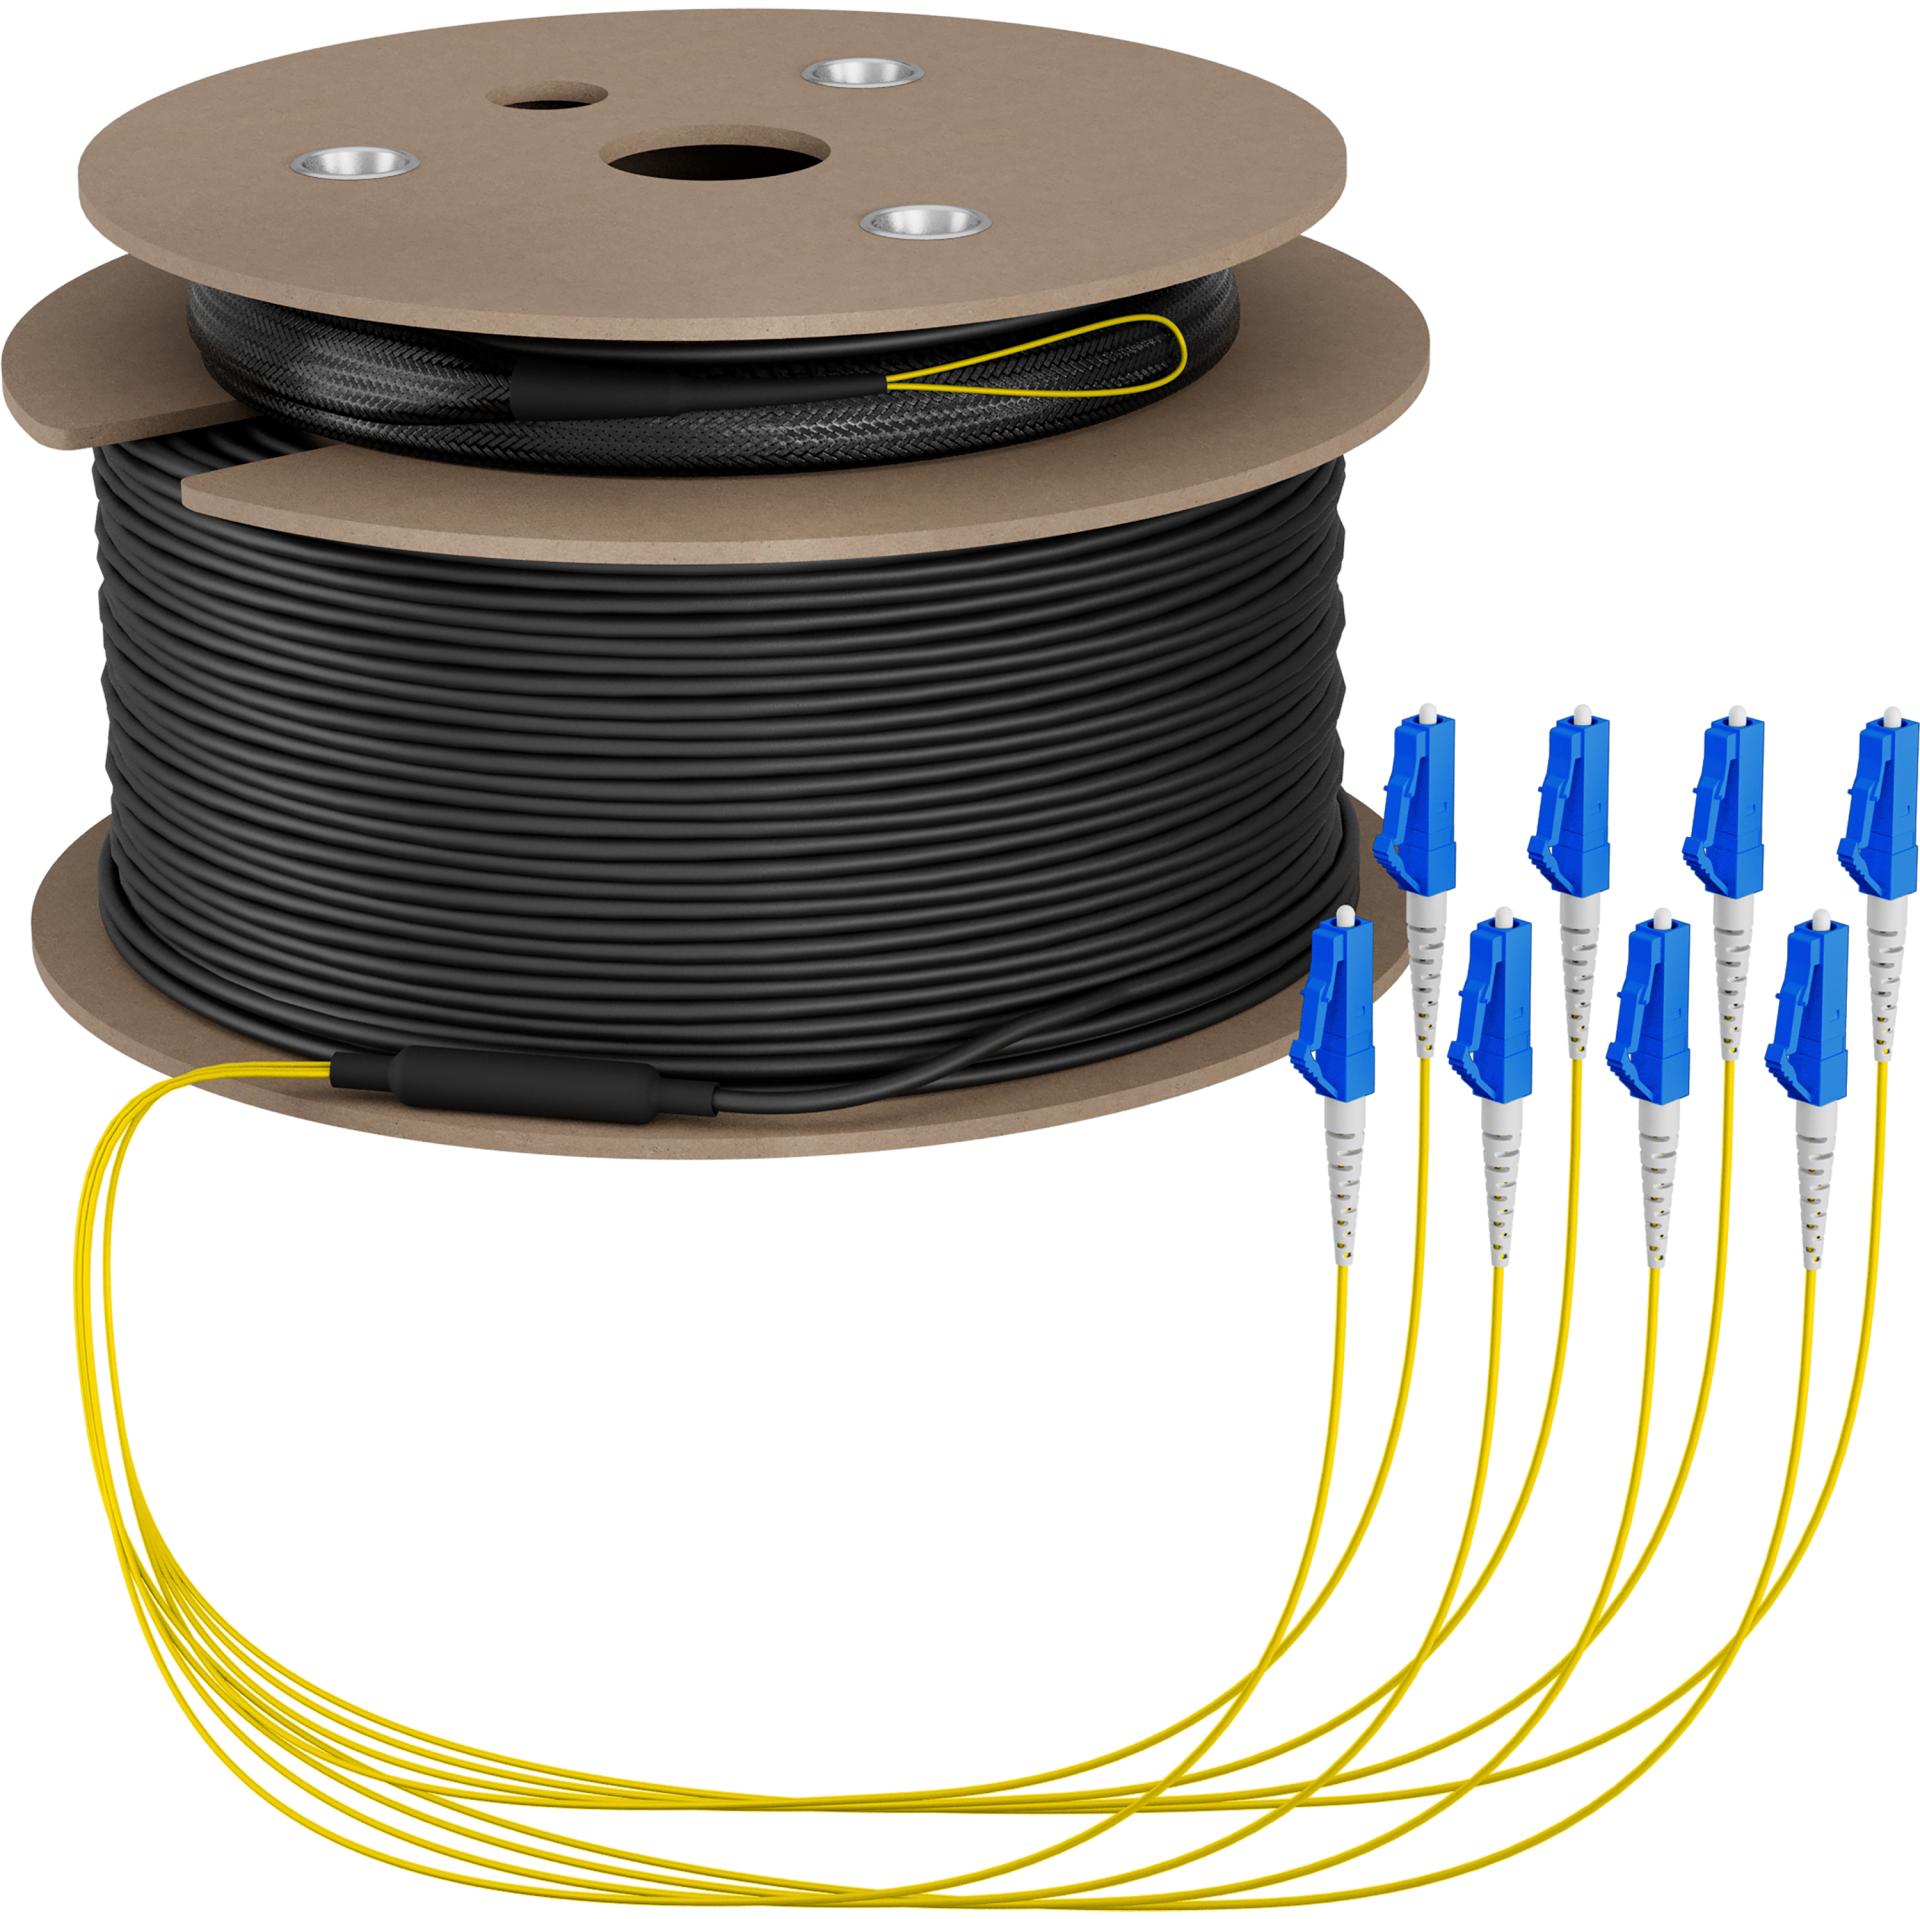 Trunk cable U-DQ(ZN)BH OS2 8E (1x8) LC-LC,80m Dca LSZH